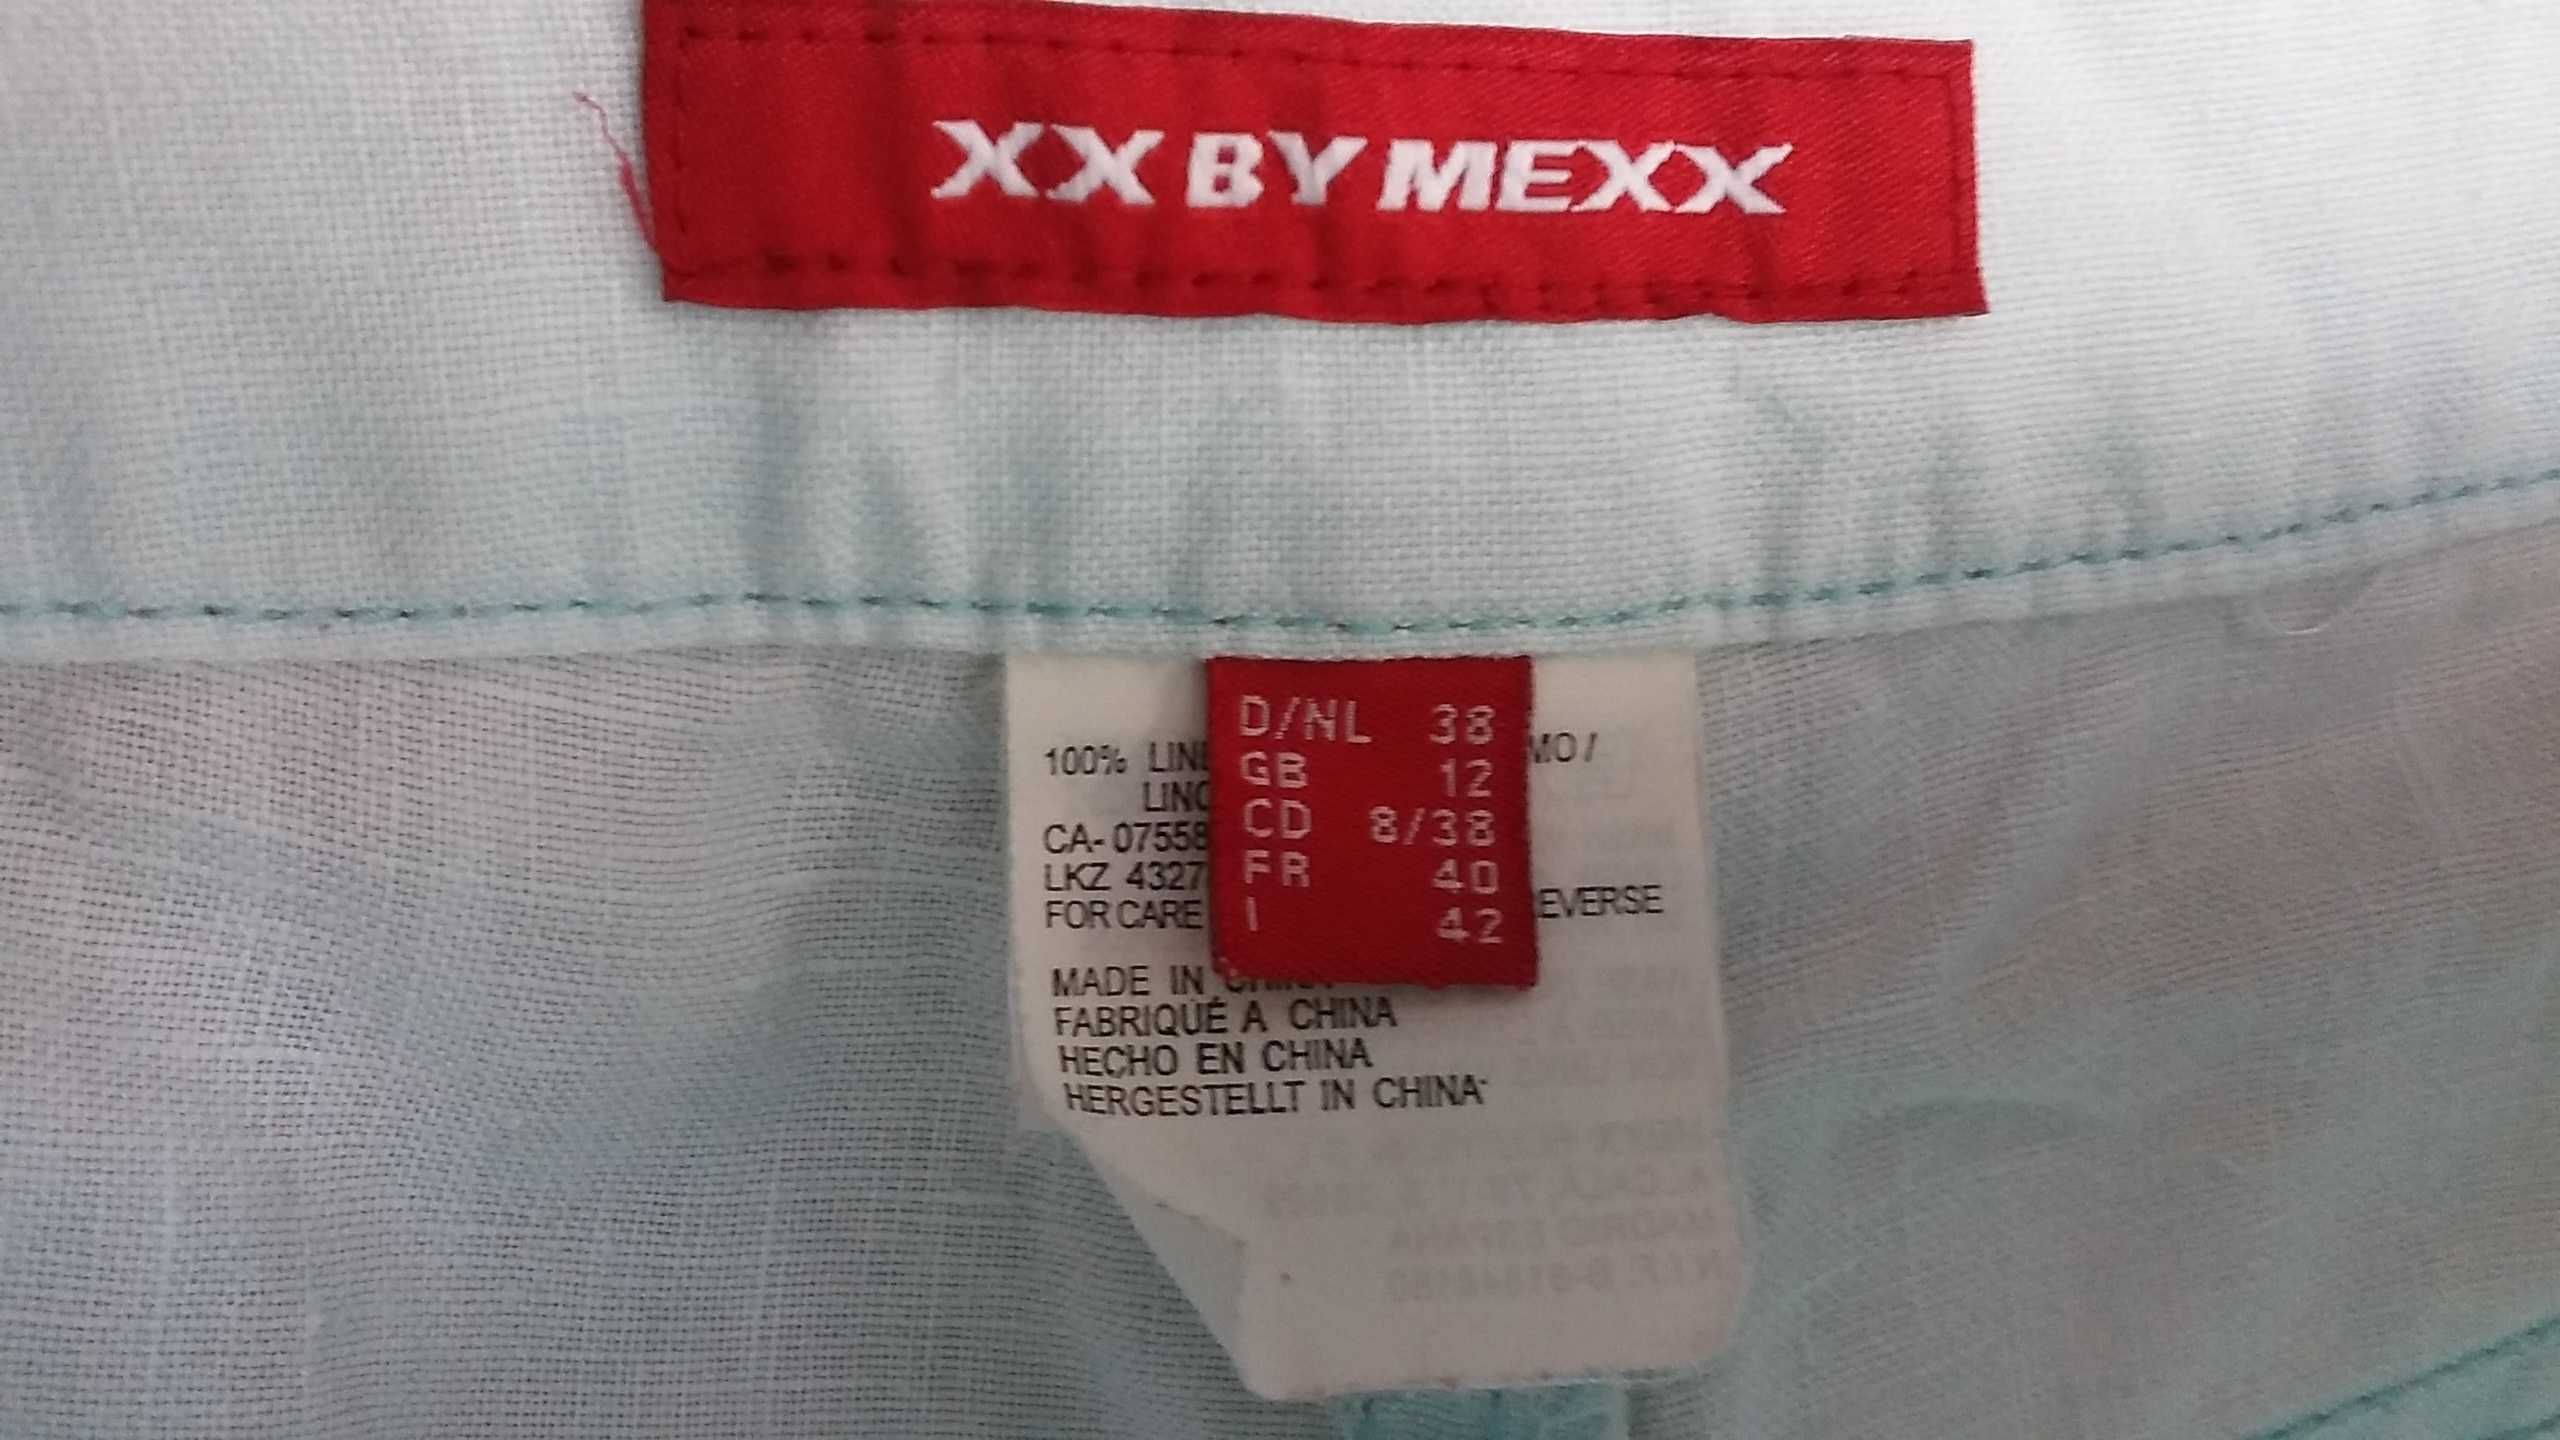 LEN,Lniane spodnie,38,XX by MEXX,BDB,męskie,damskie,jasne,turkus,mięta